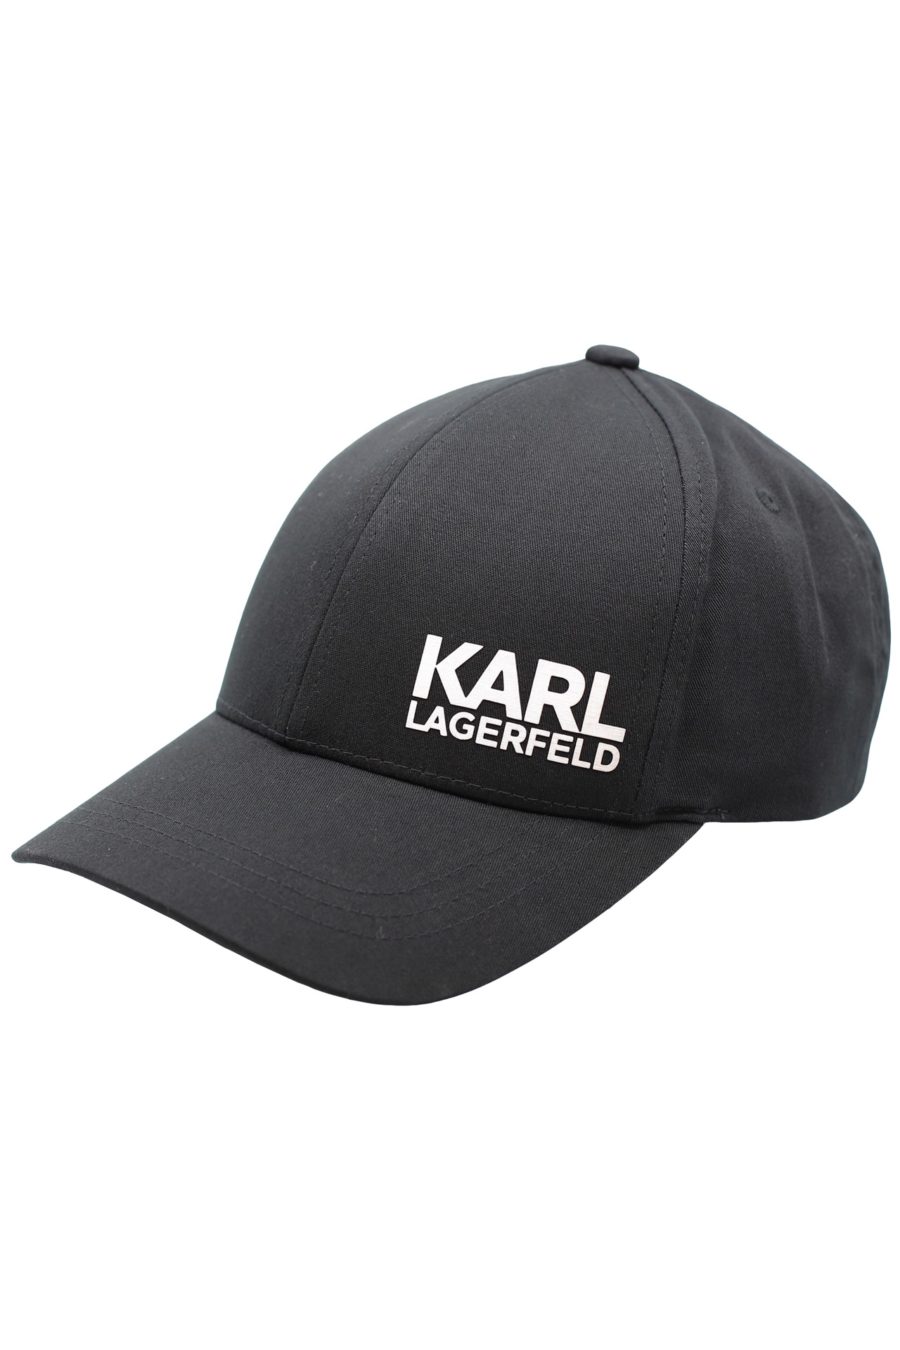 Gorra negra con logo plateado "Karl Legerfeld" - 4e1b7cf8c73e29ff49a8039f4f01c7e99a31cb5e